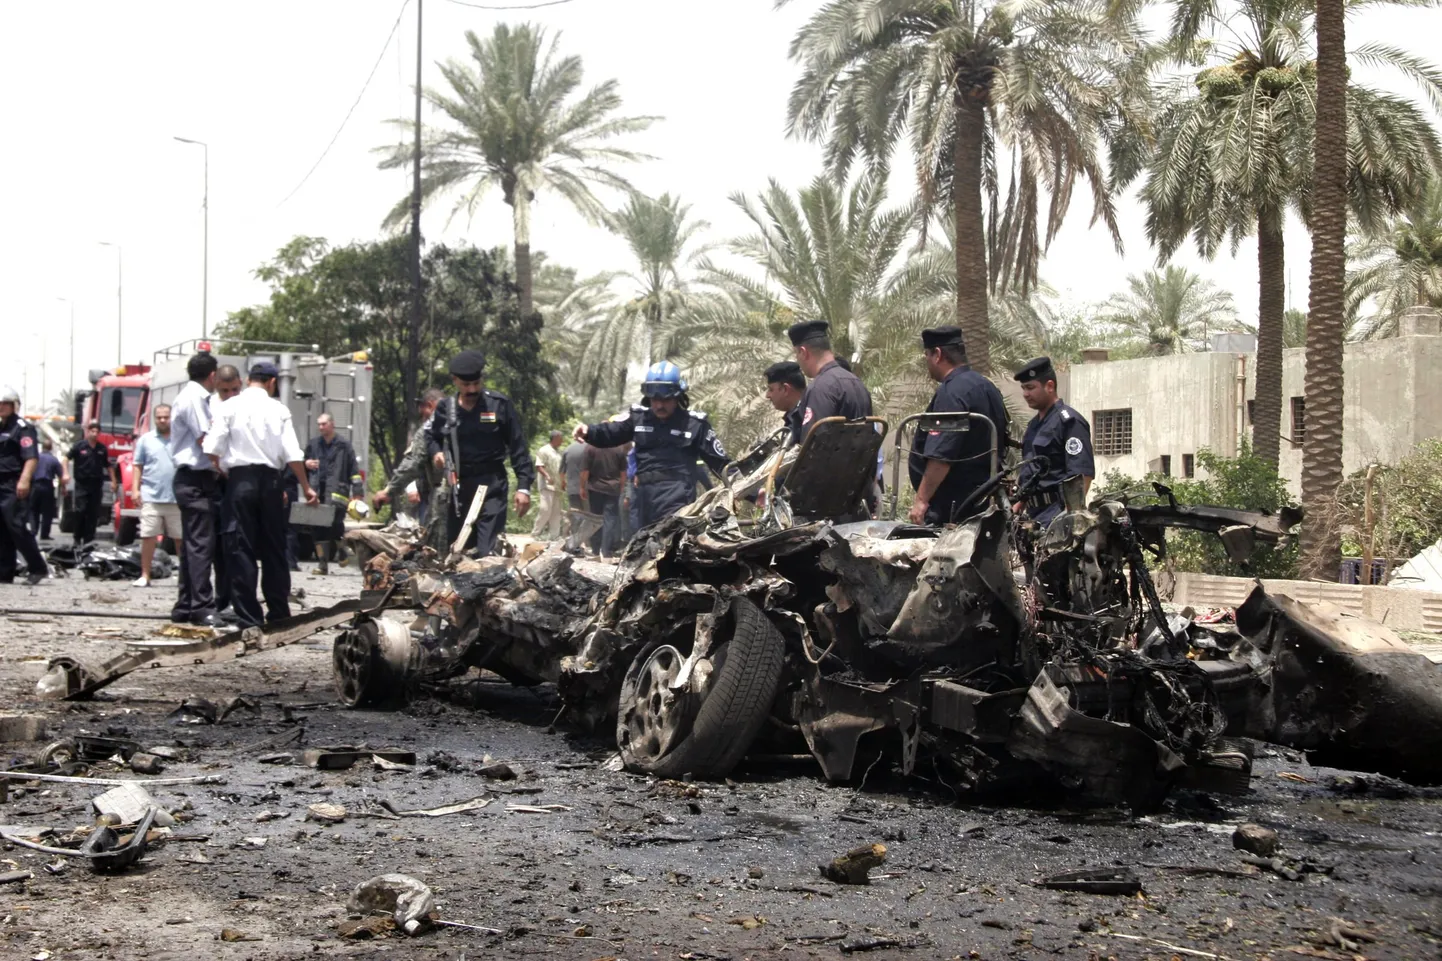 Iraagi politsei tänase pommirünnaku paigas.